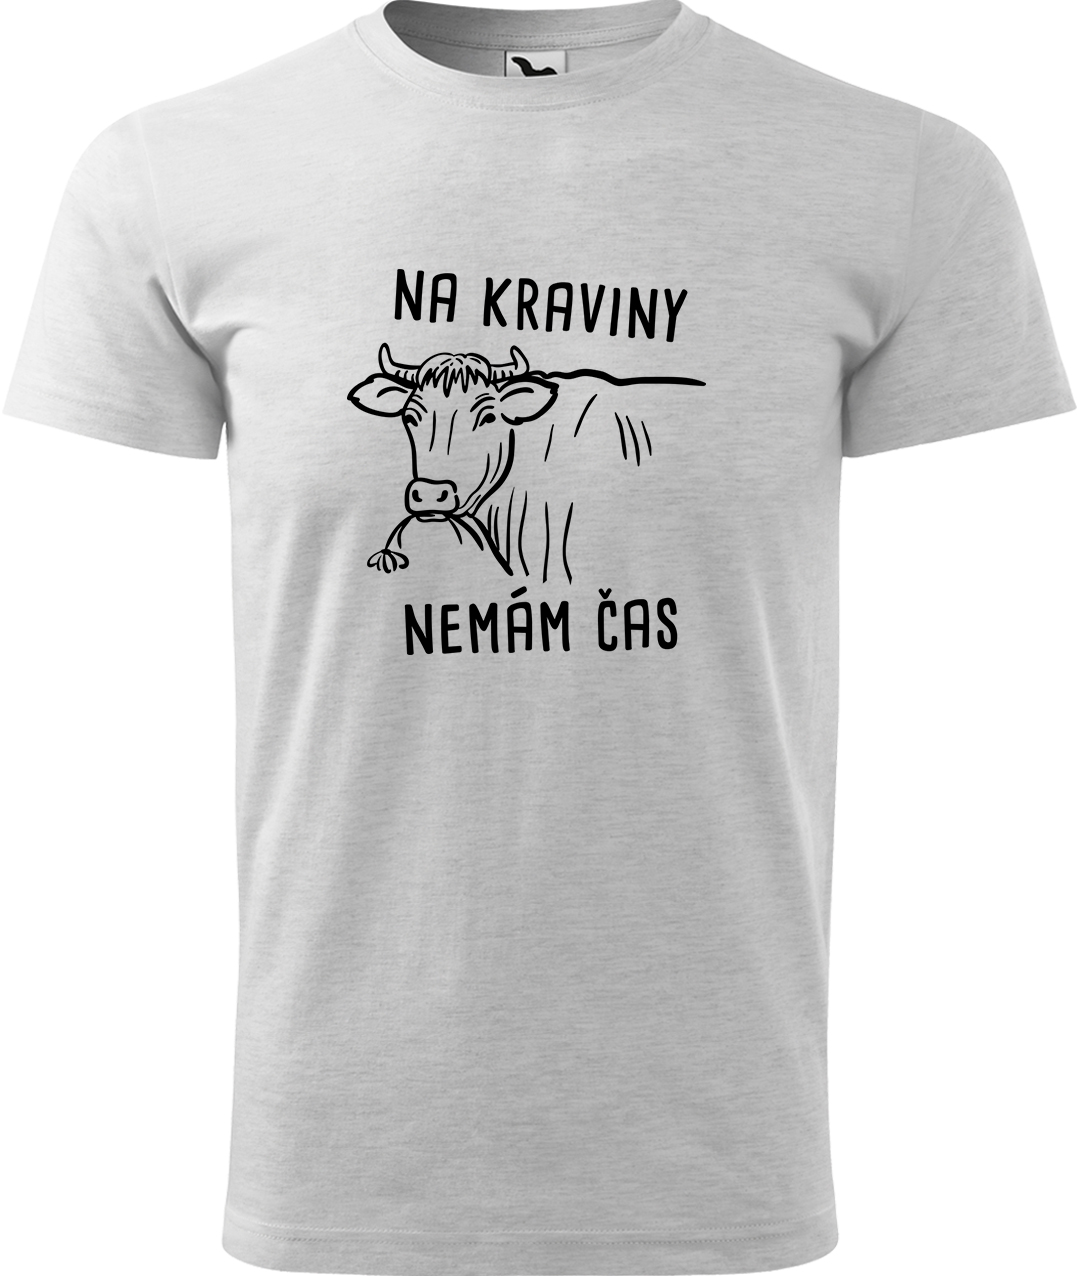 Pánské tričko s krávou - Na kraviny nemám čas Velikost: S, Barva: Světle šedý melír (03), Střih: pánský